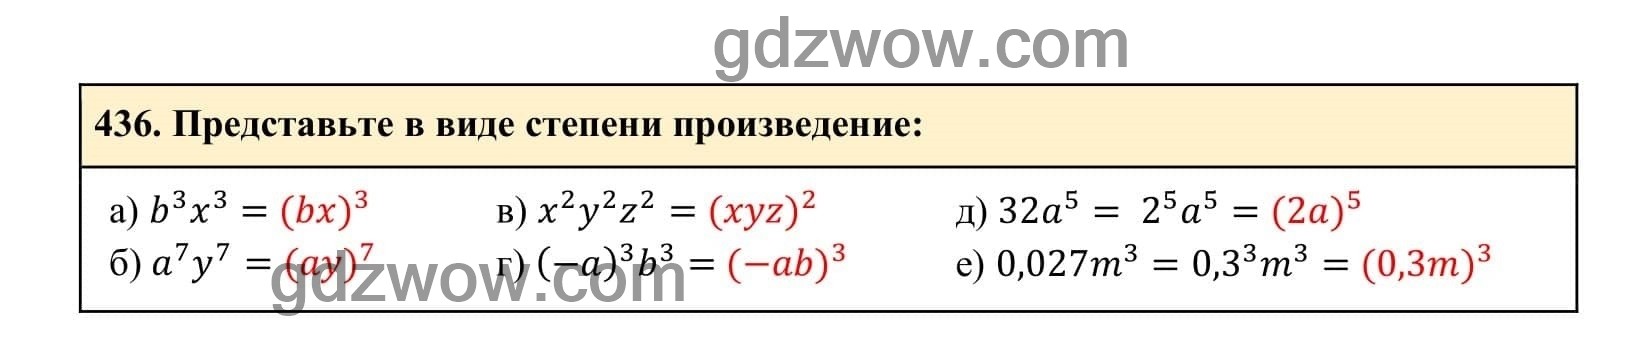 Упражнение 436 - ГДЗ по Алгебре 7 класс Учебник Макарычев (решебник) - GDZwow